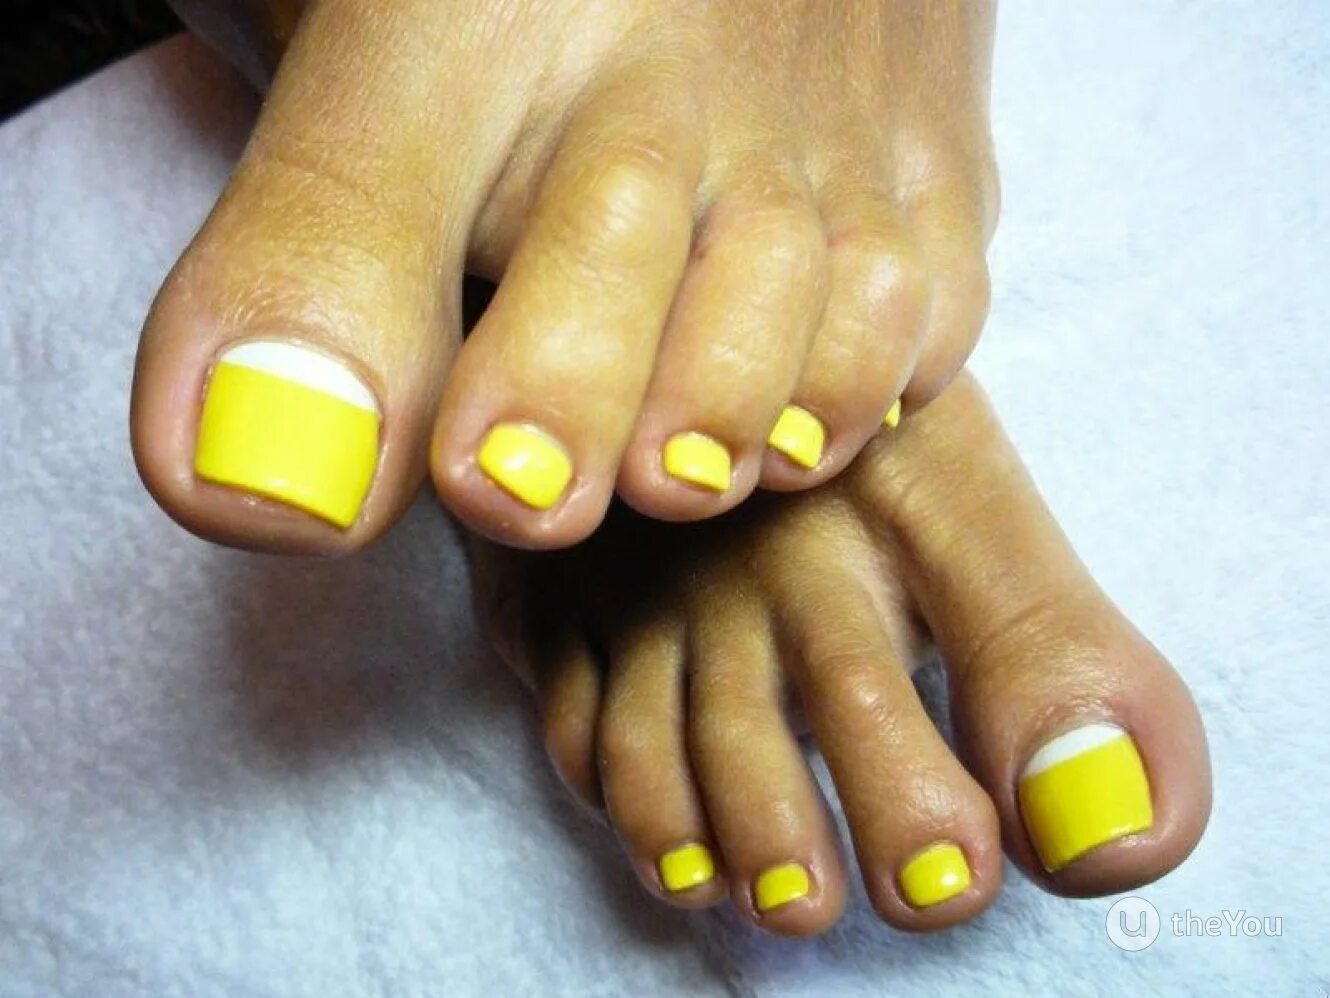 Желтые стопы. Педикюр желтый с белым. Ногти на ногах желтого цвета. Педикюр в желтых оттенках. Желто лимонный педикюр.